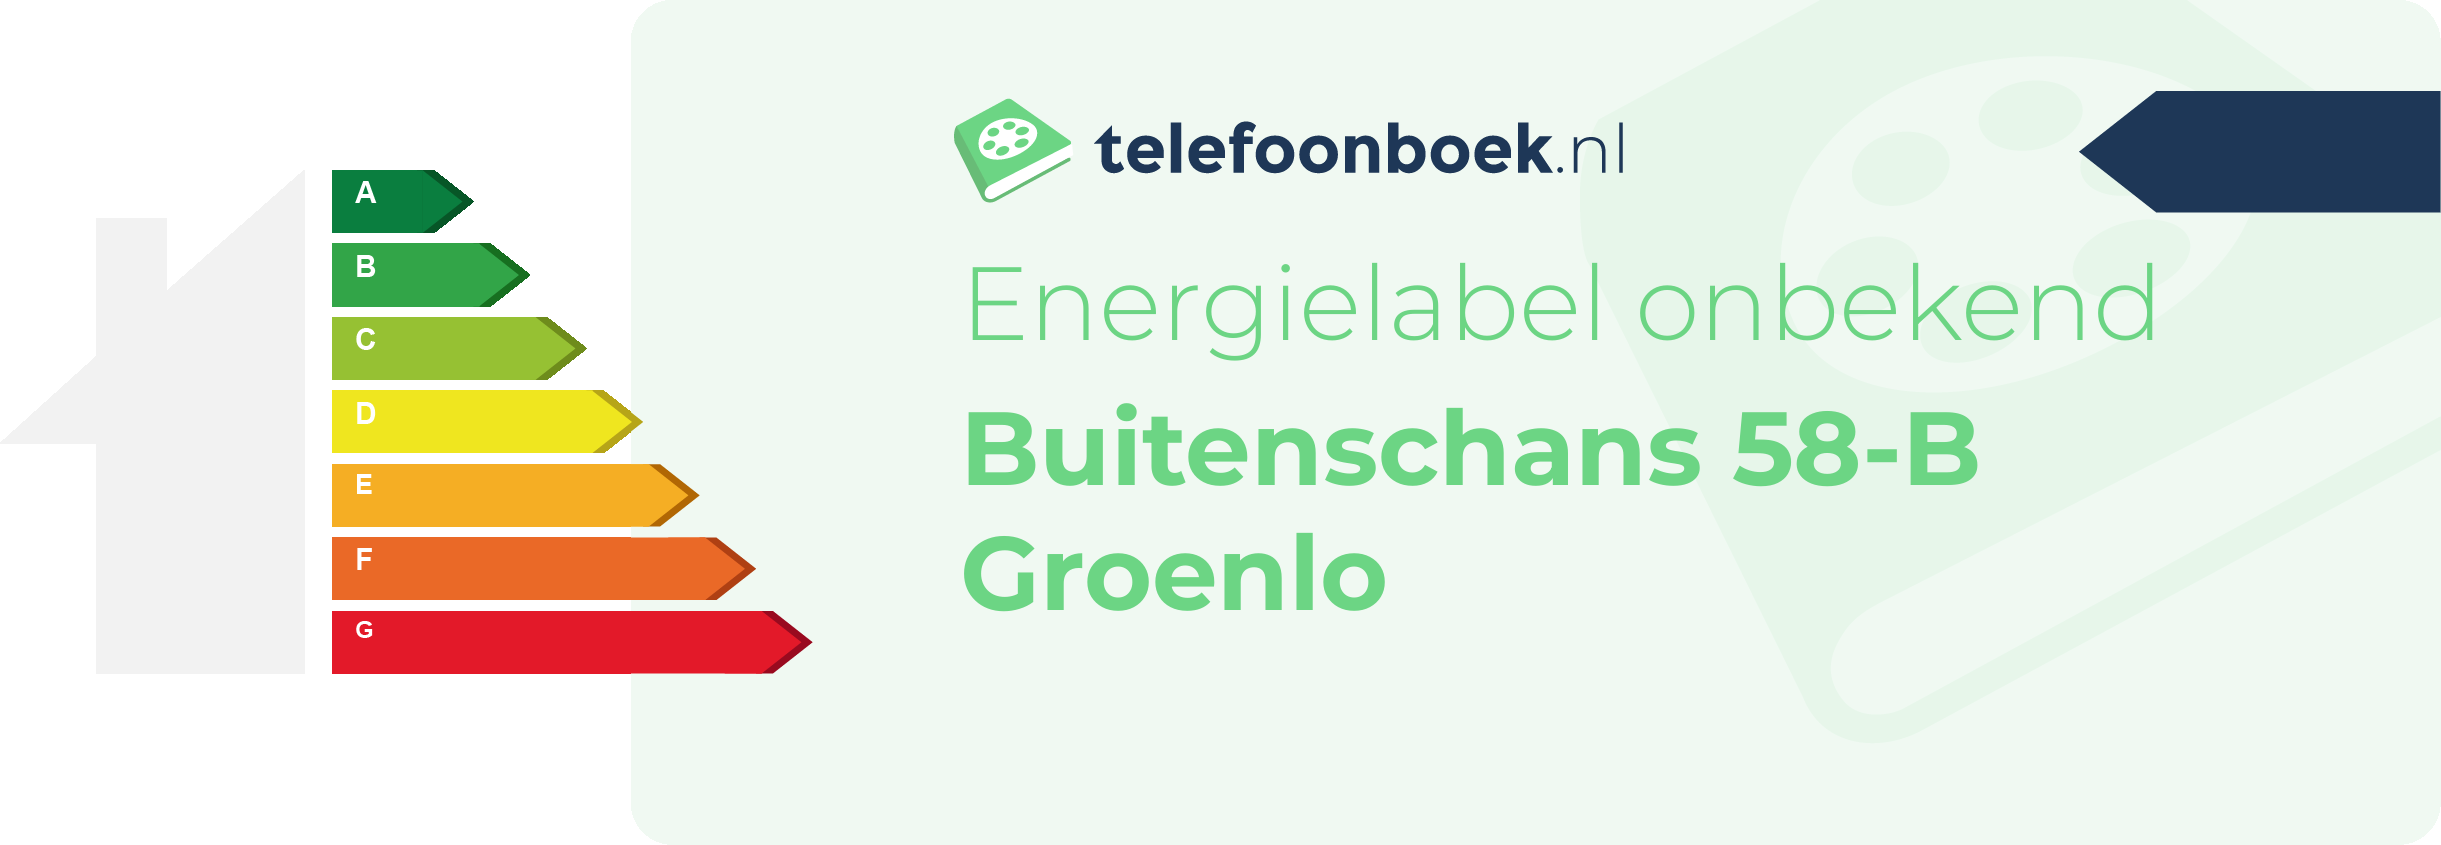 Energielabel Buitenschans 58-B Groenlo